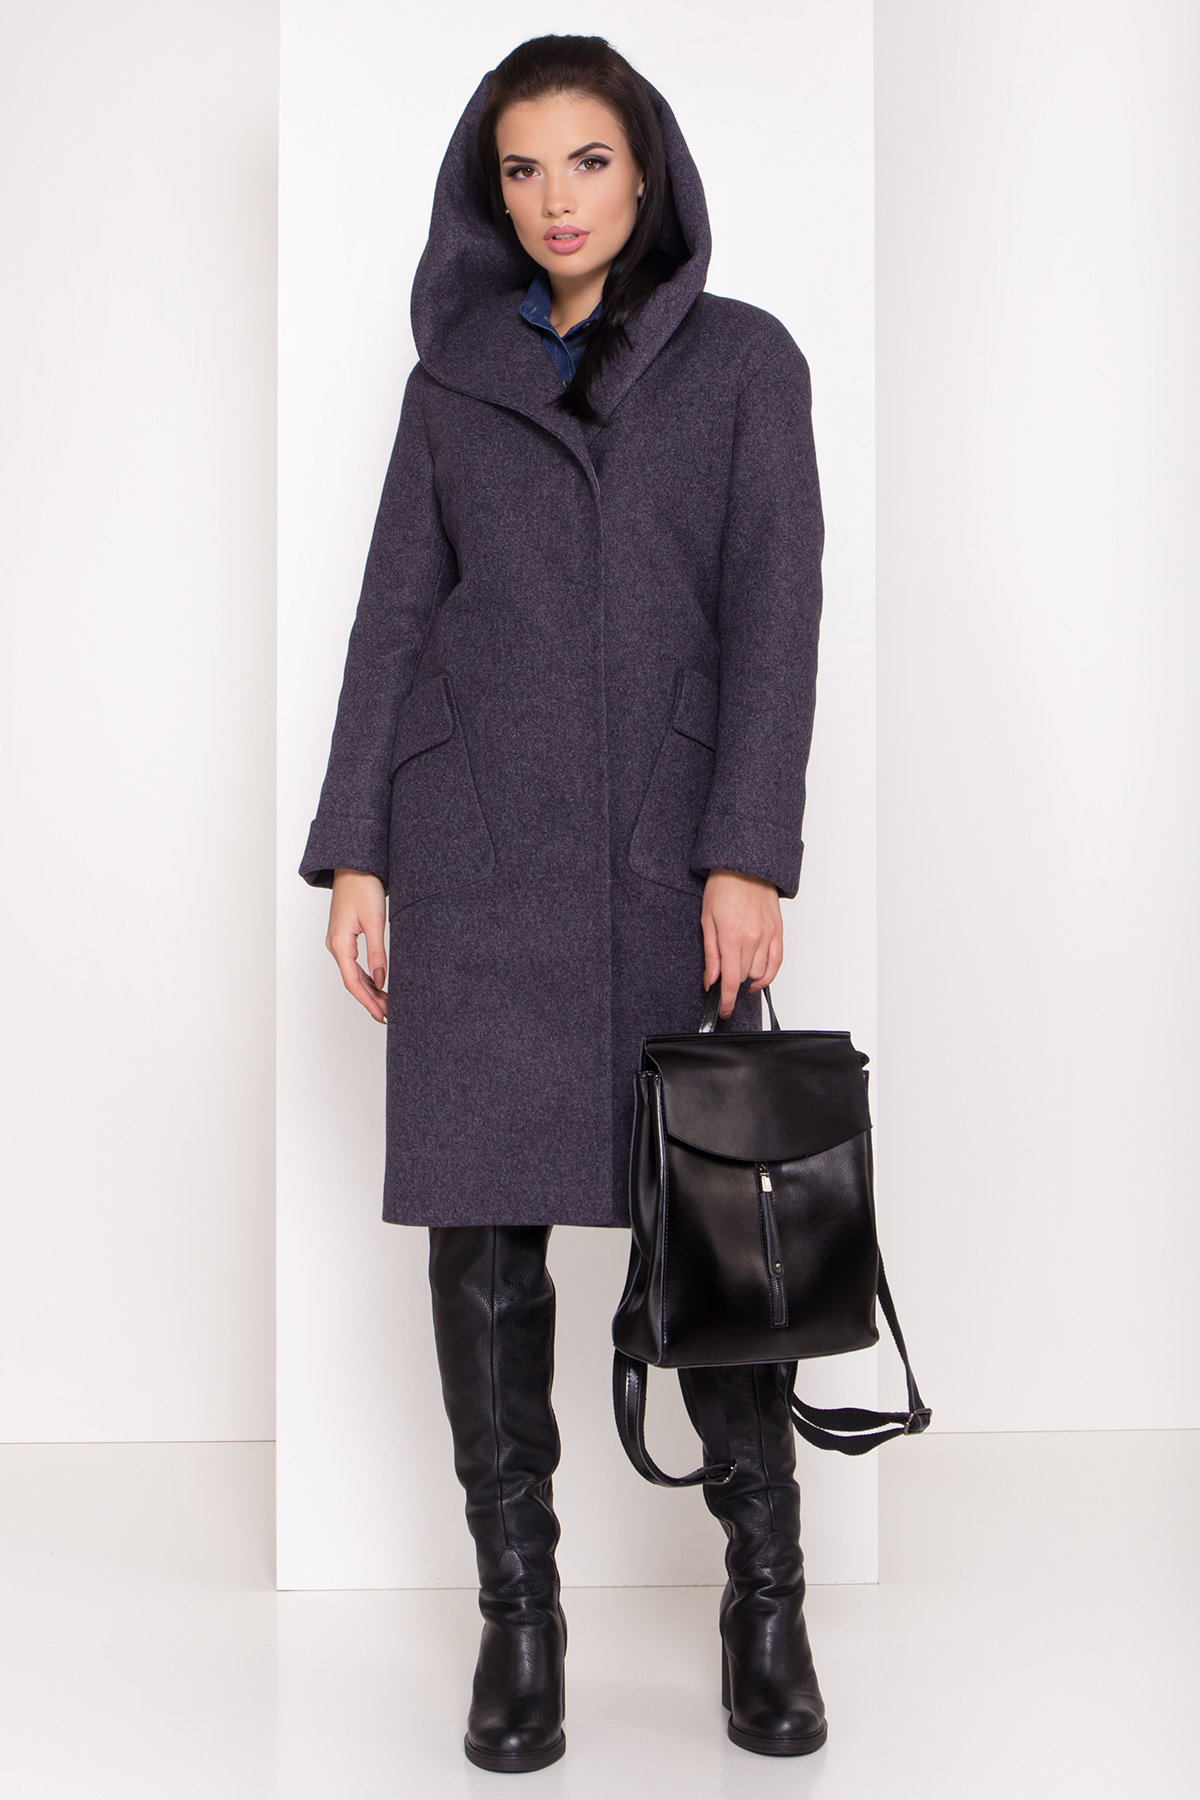 Женское пальто зима с накладными карманами Анджи 8301 АРТ. 44427 Цвет: т. синий 543 - фото 2, интернет магазин tm-modus.ru